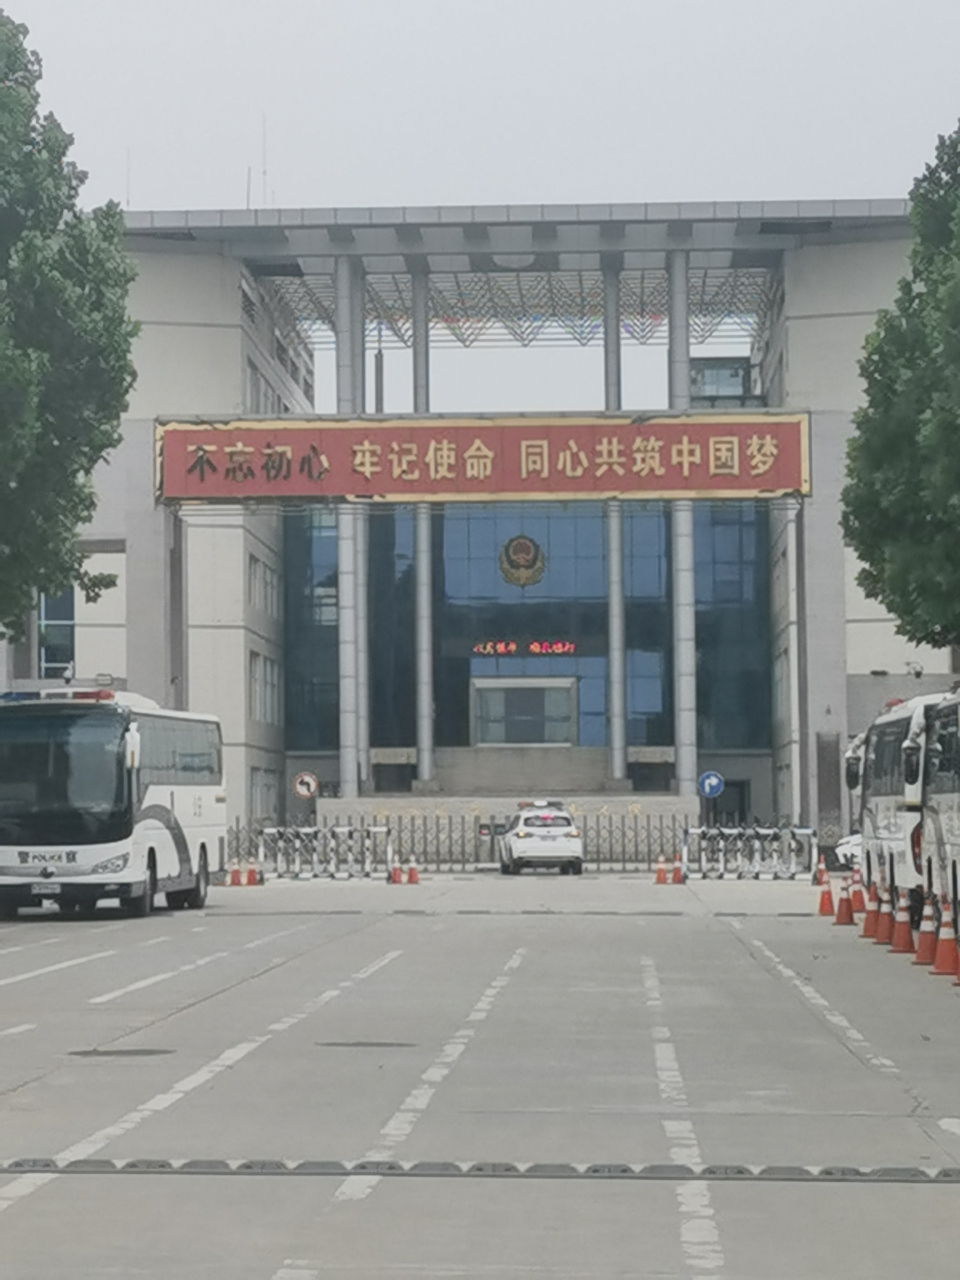 6月16日,下午在郑州市第三看守所办案